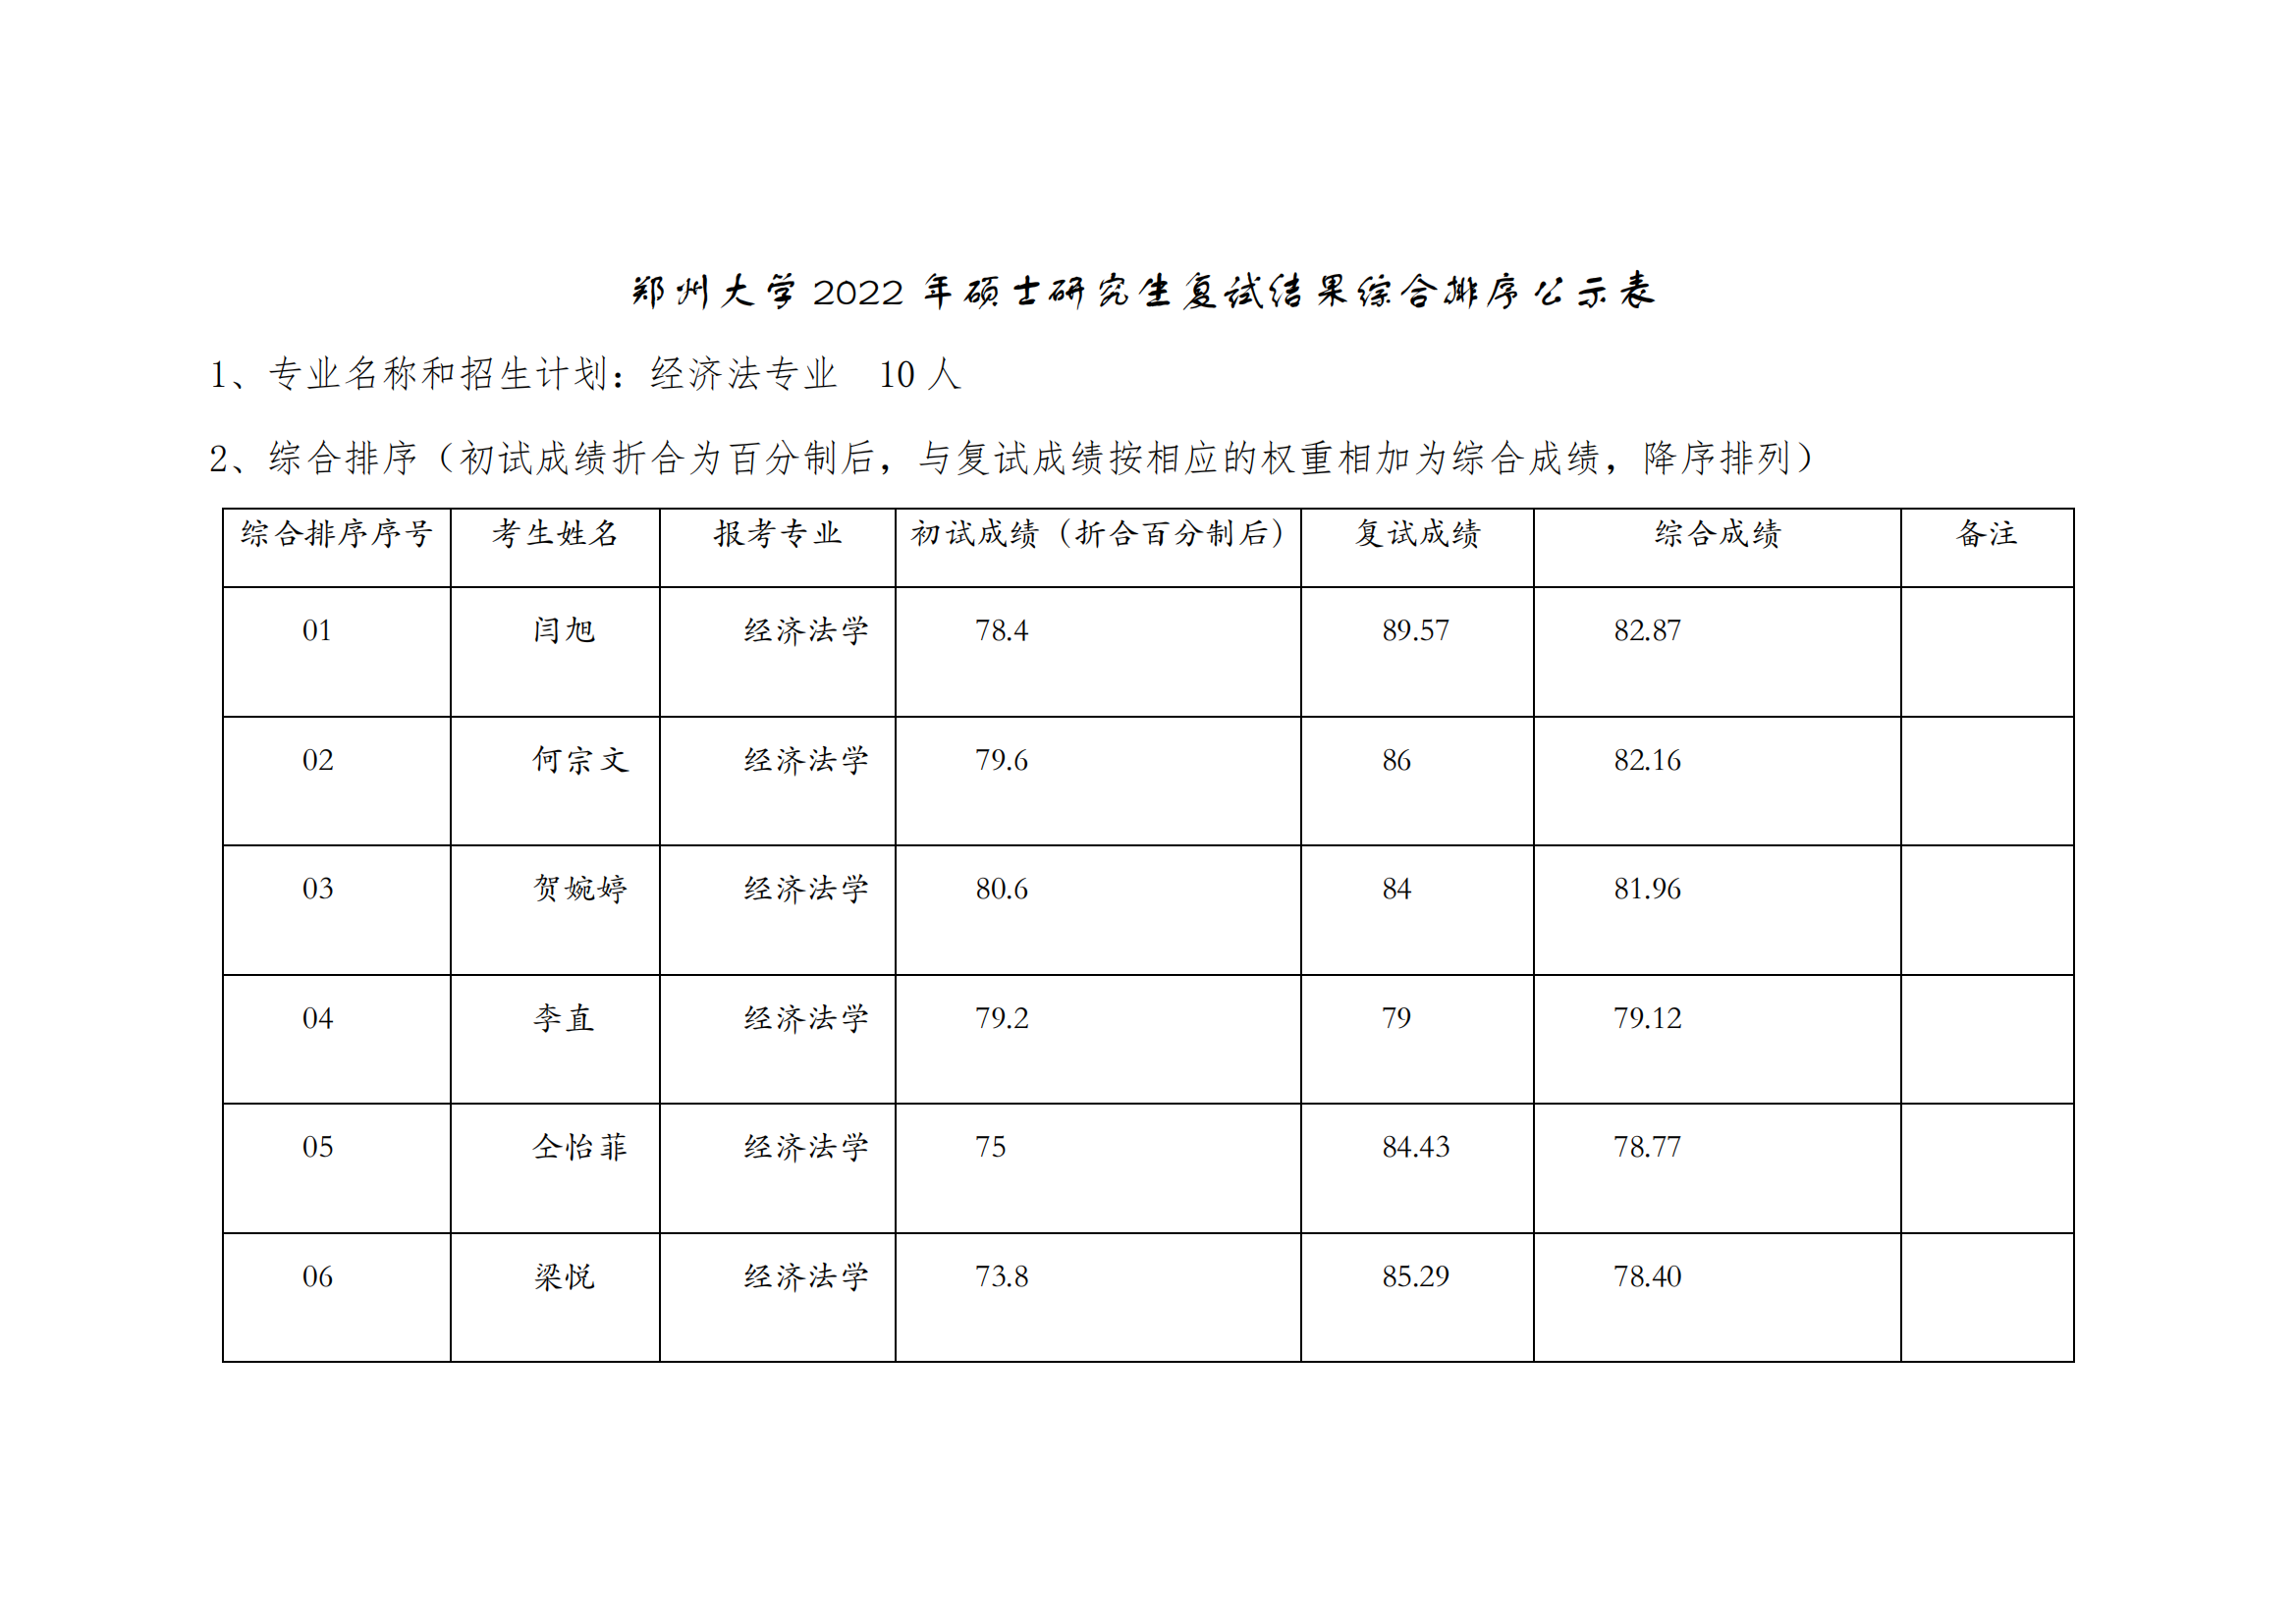 郑州大学 2022 年硕士研究生复试结果综合排序公示表【经济法】_00.png